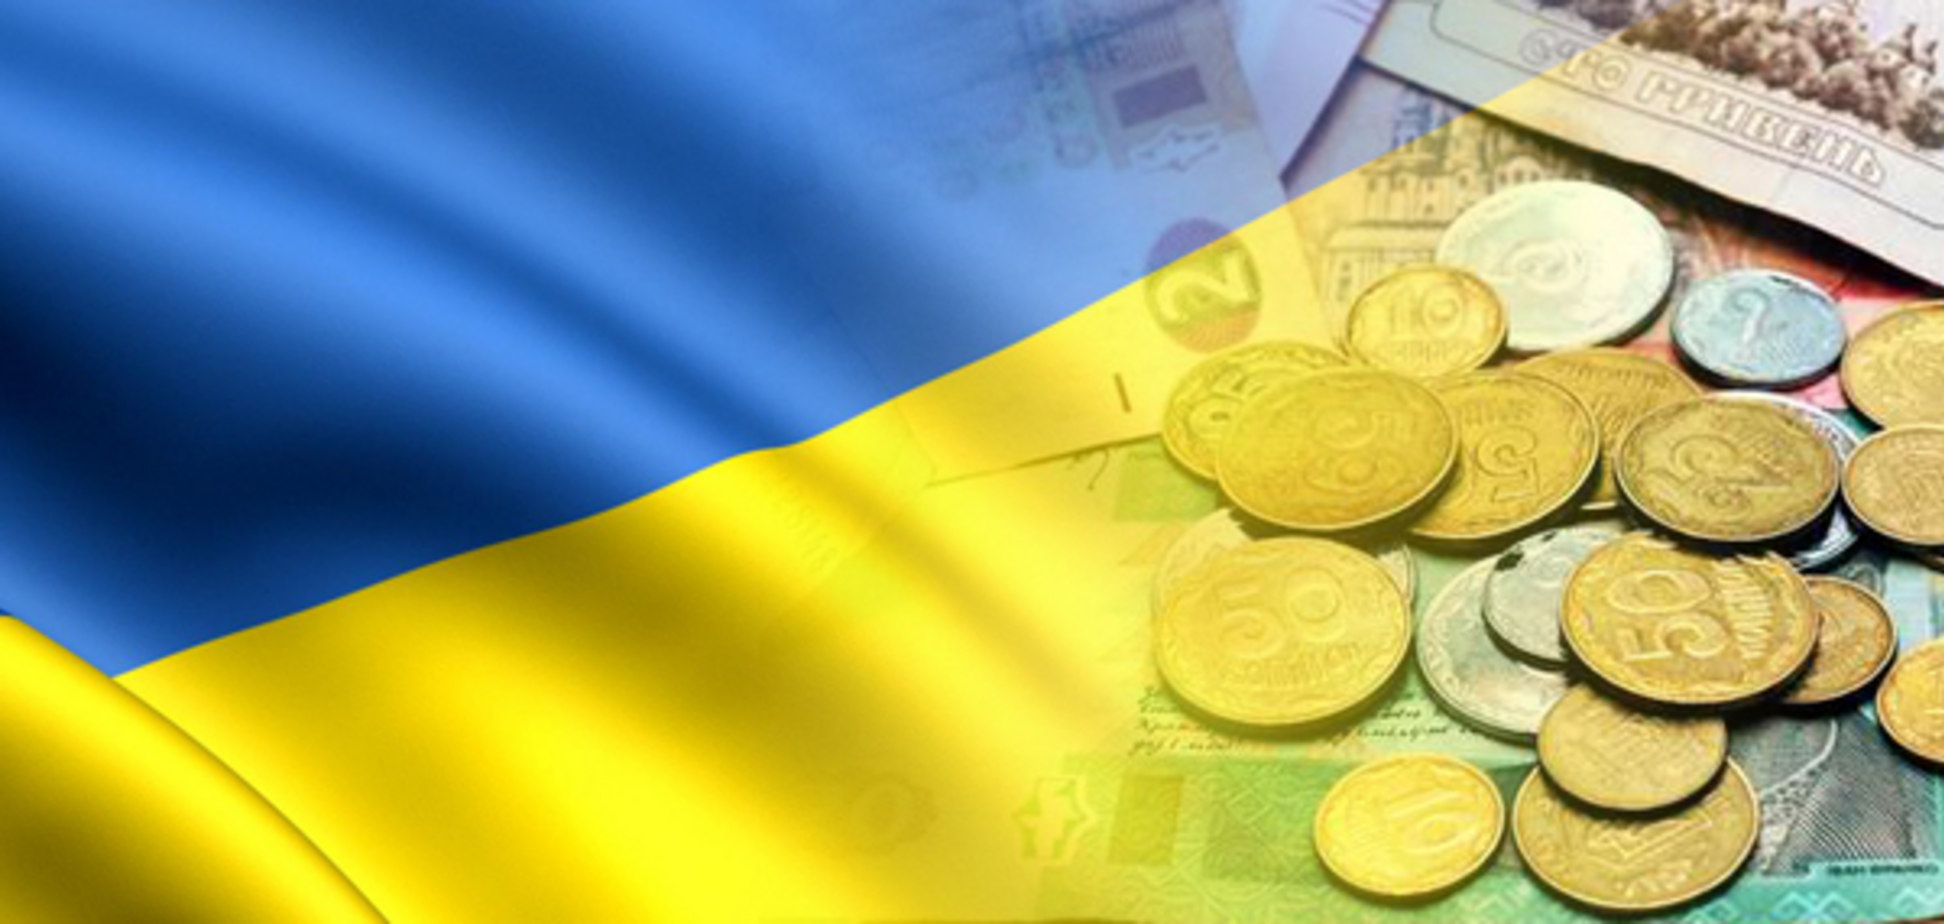 Податкова реформа в Україні: як подорожчають сигарети і алкоголь. Інфографіка